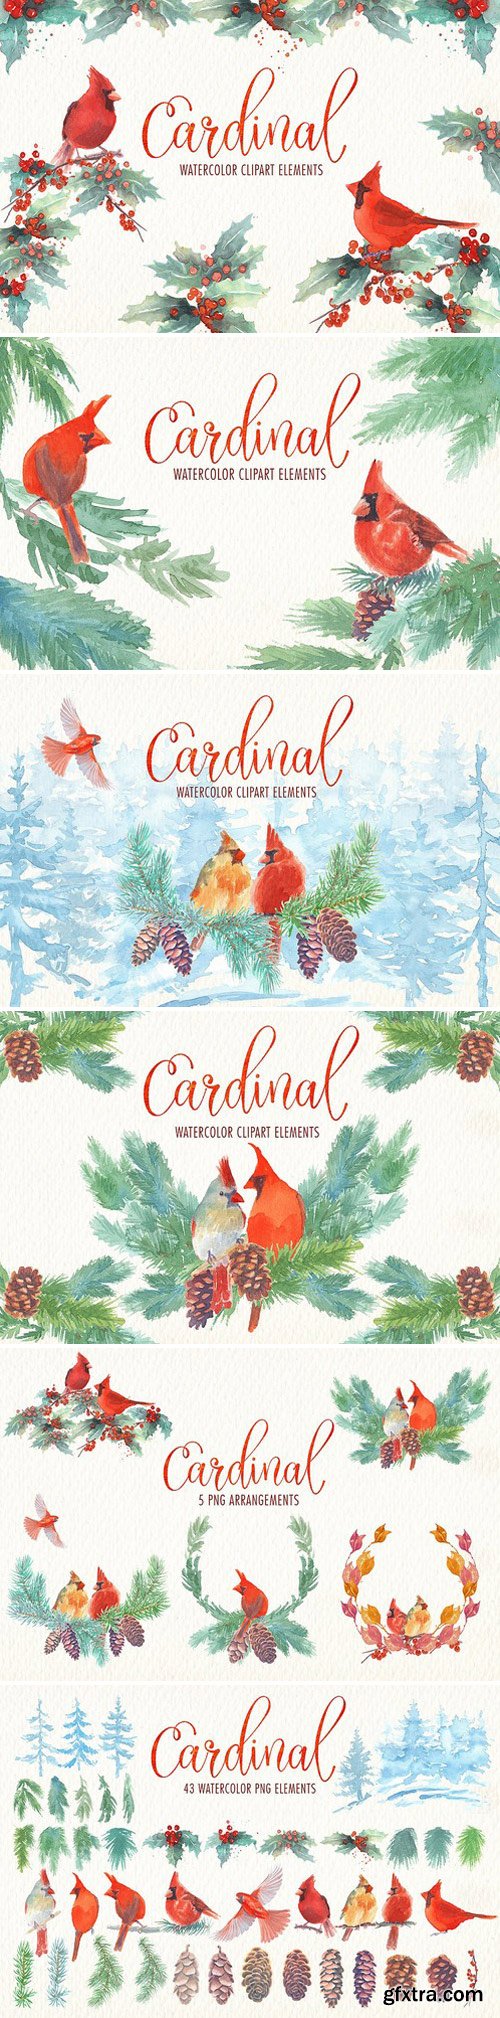 CM - Cardinal bird watercolor clipart set 1870858